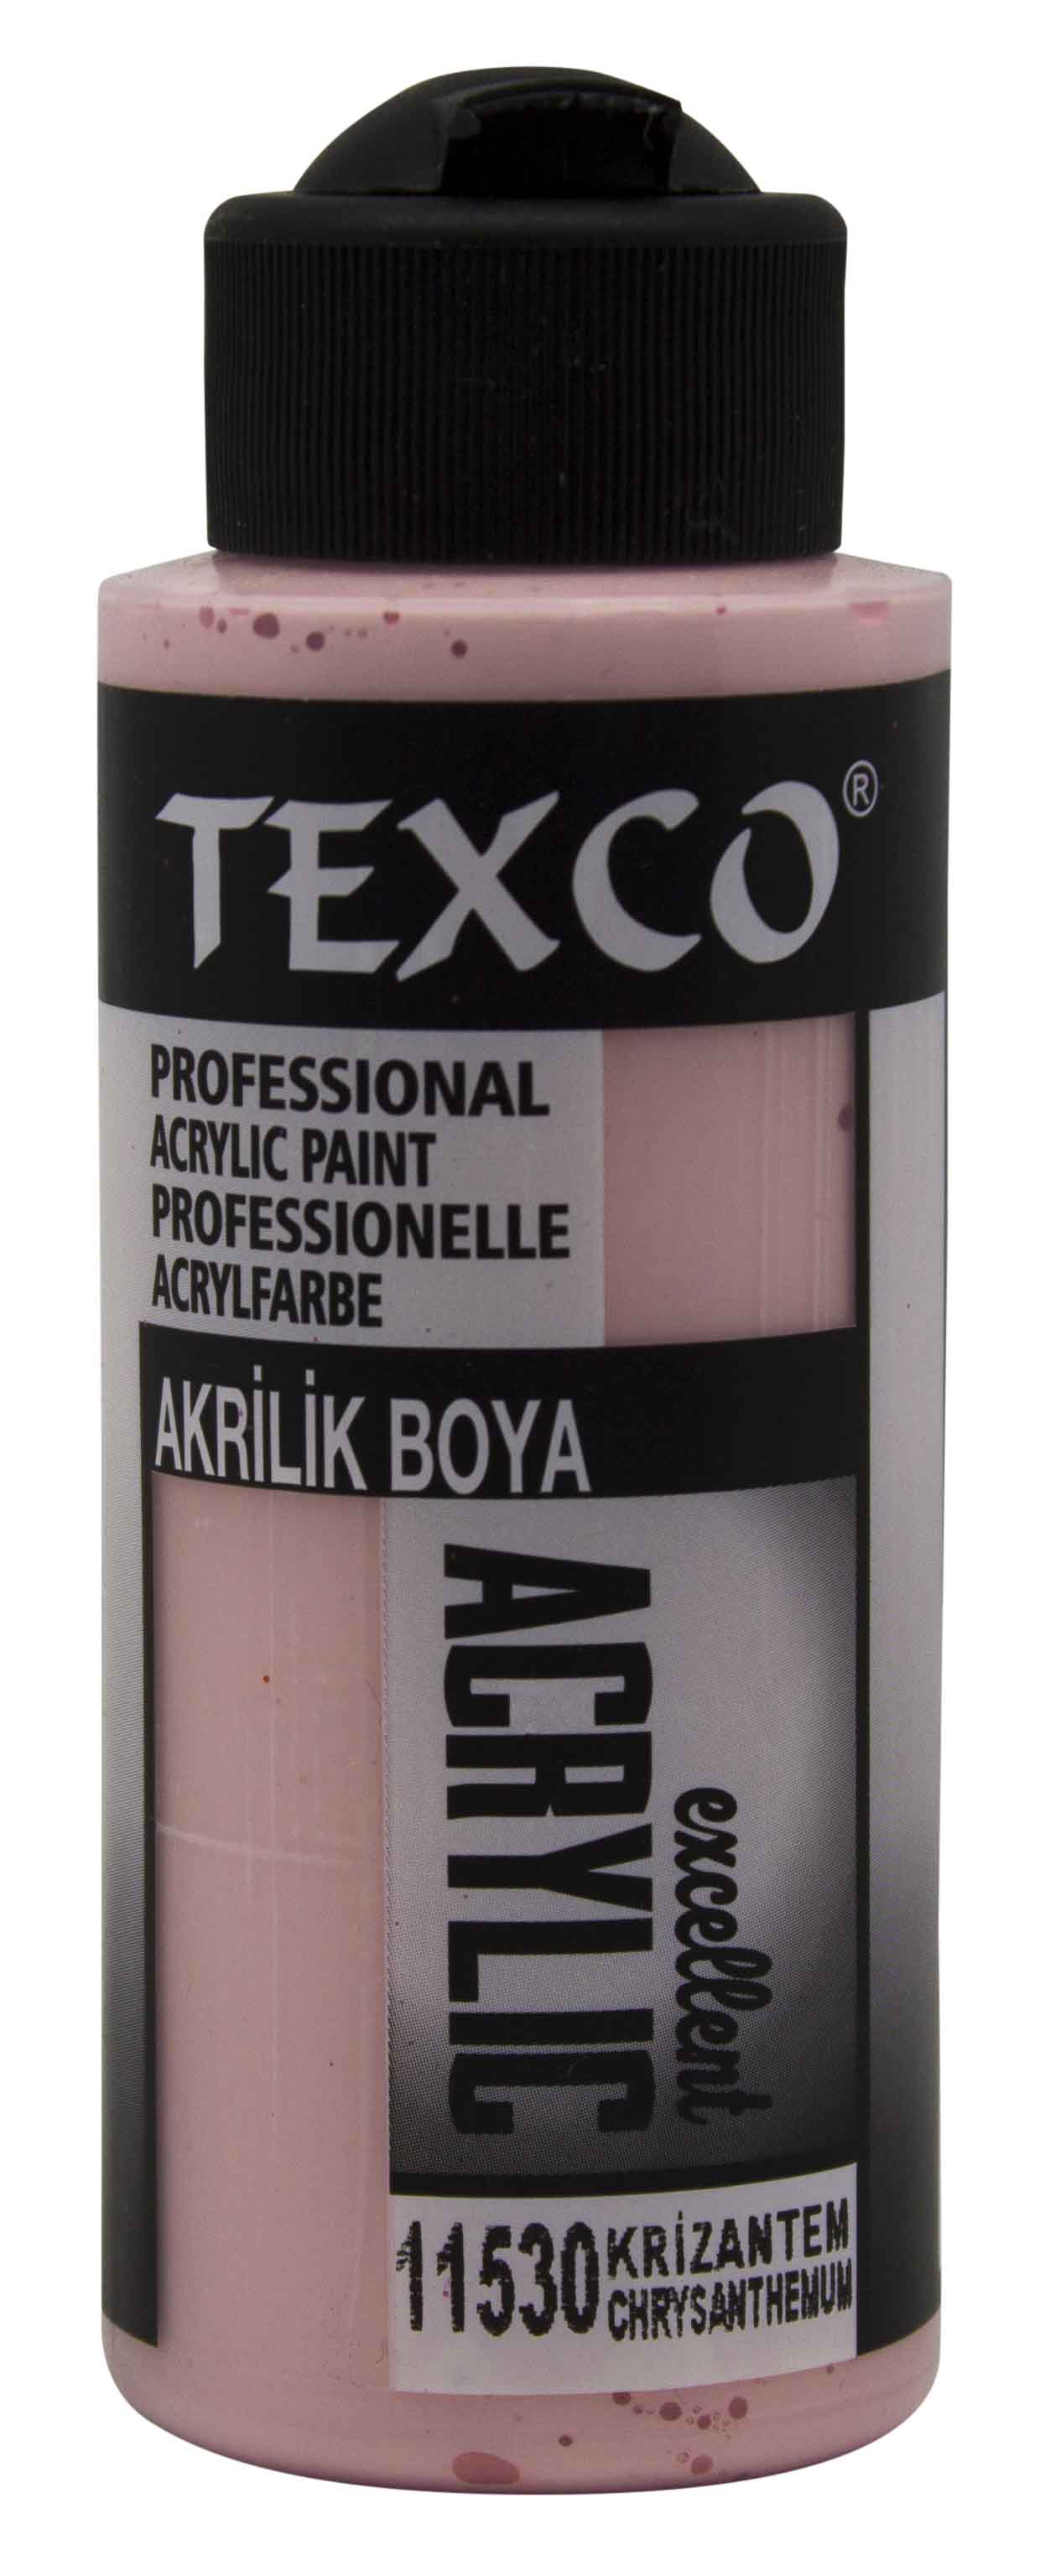 Texco Excellent Akrilik Boya 11530-Krizantem 110 cc